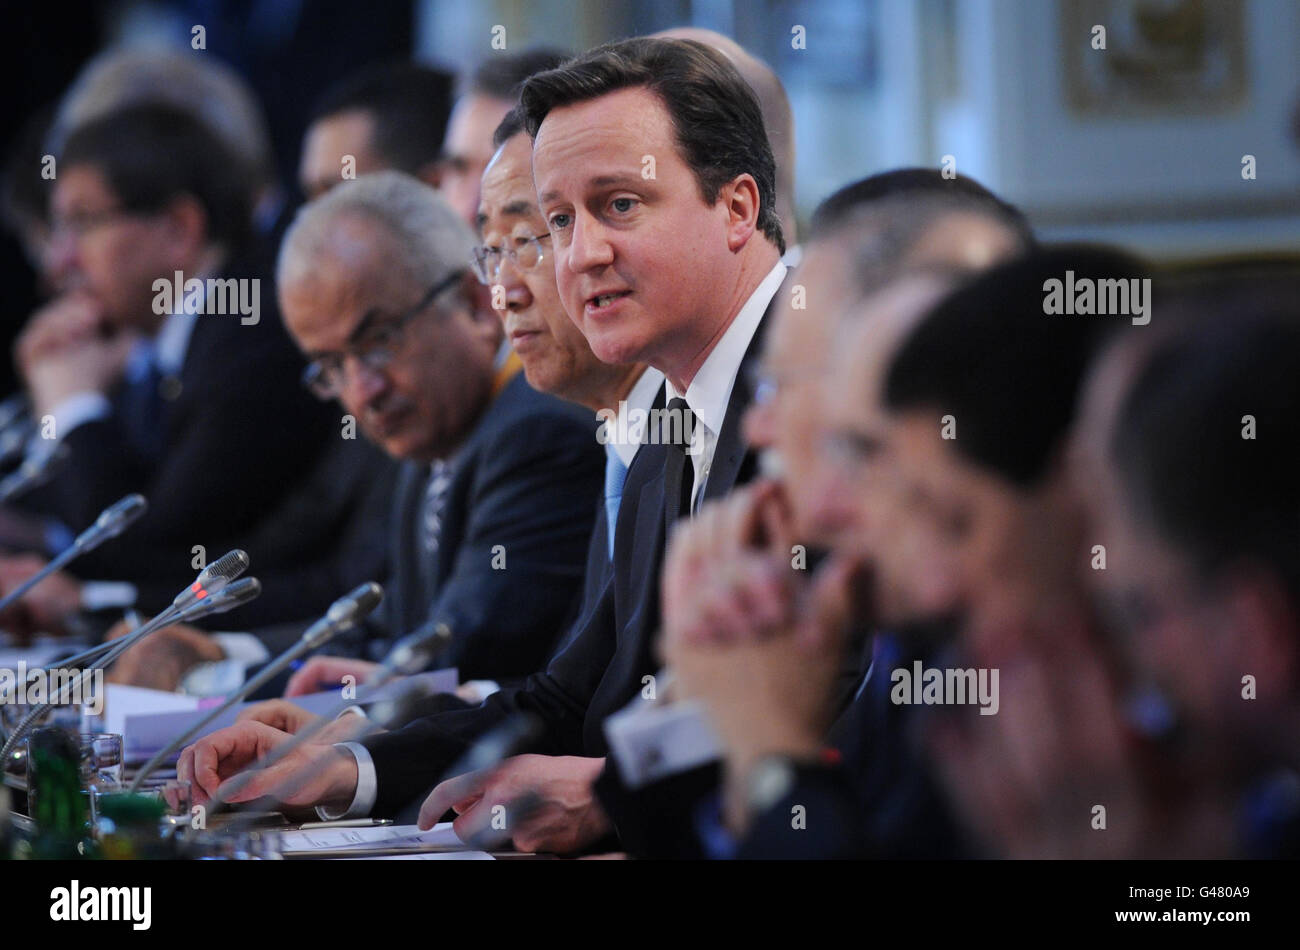 Le Premier ministre britannique David Cameron s'exprime à l'ouverture de la Conférence libyenne à Londres. Banque D'Images